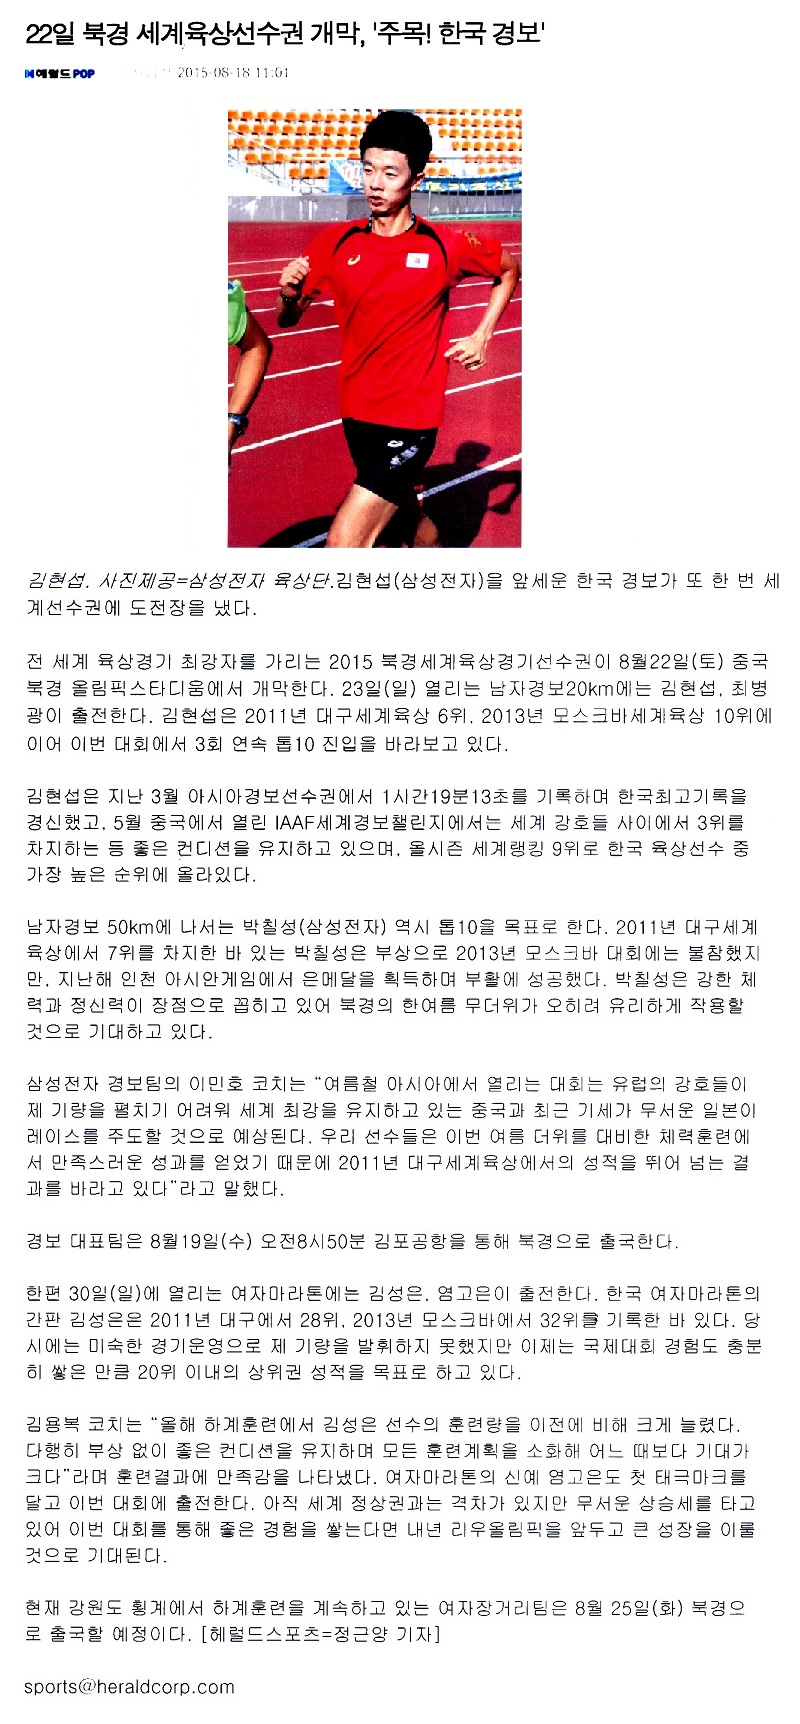 22일 북경세계육상선수권 개막, ‘주목! 한국 경보’